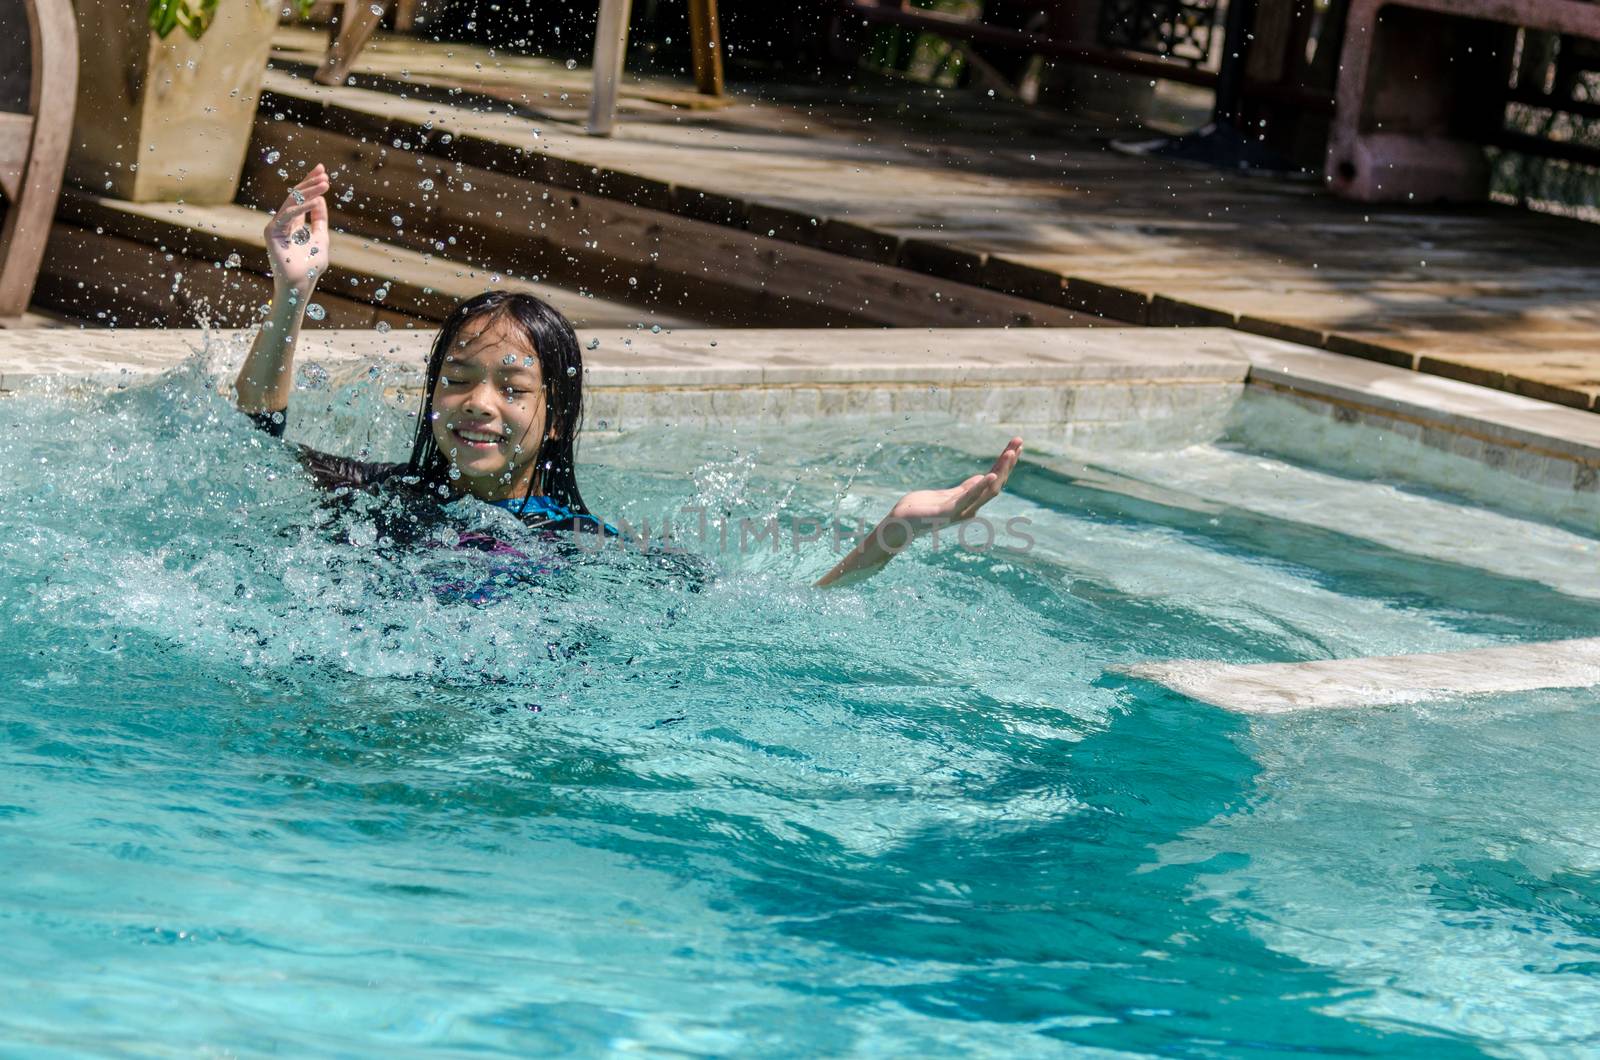 Asian girl in swimming pool.